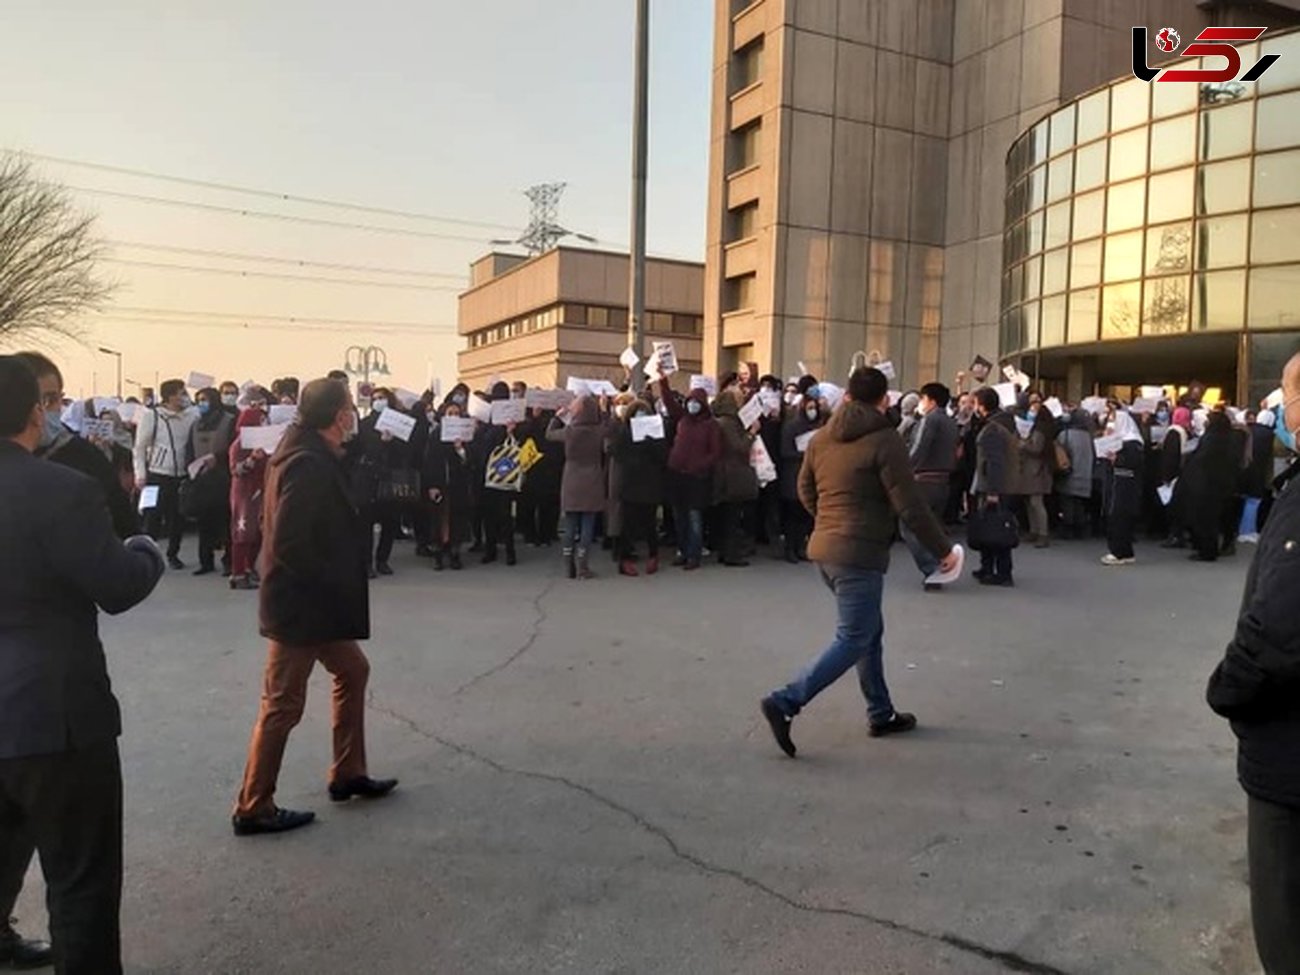  تجمع پرستاران بیمارستان میلاد مقابل ورودی بیمارستان